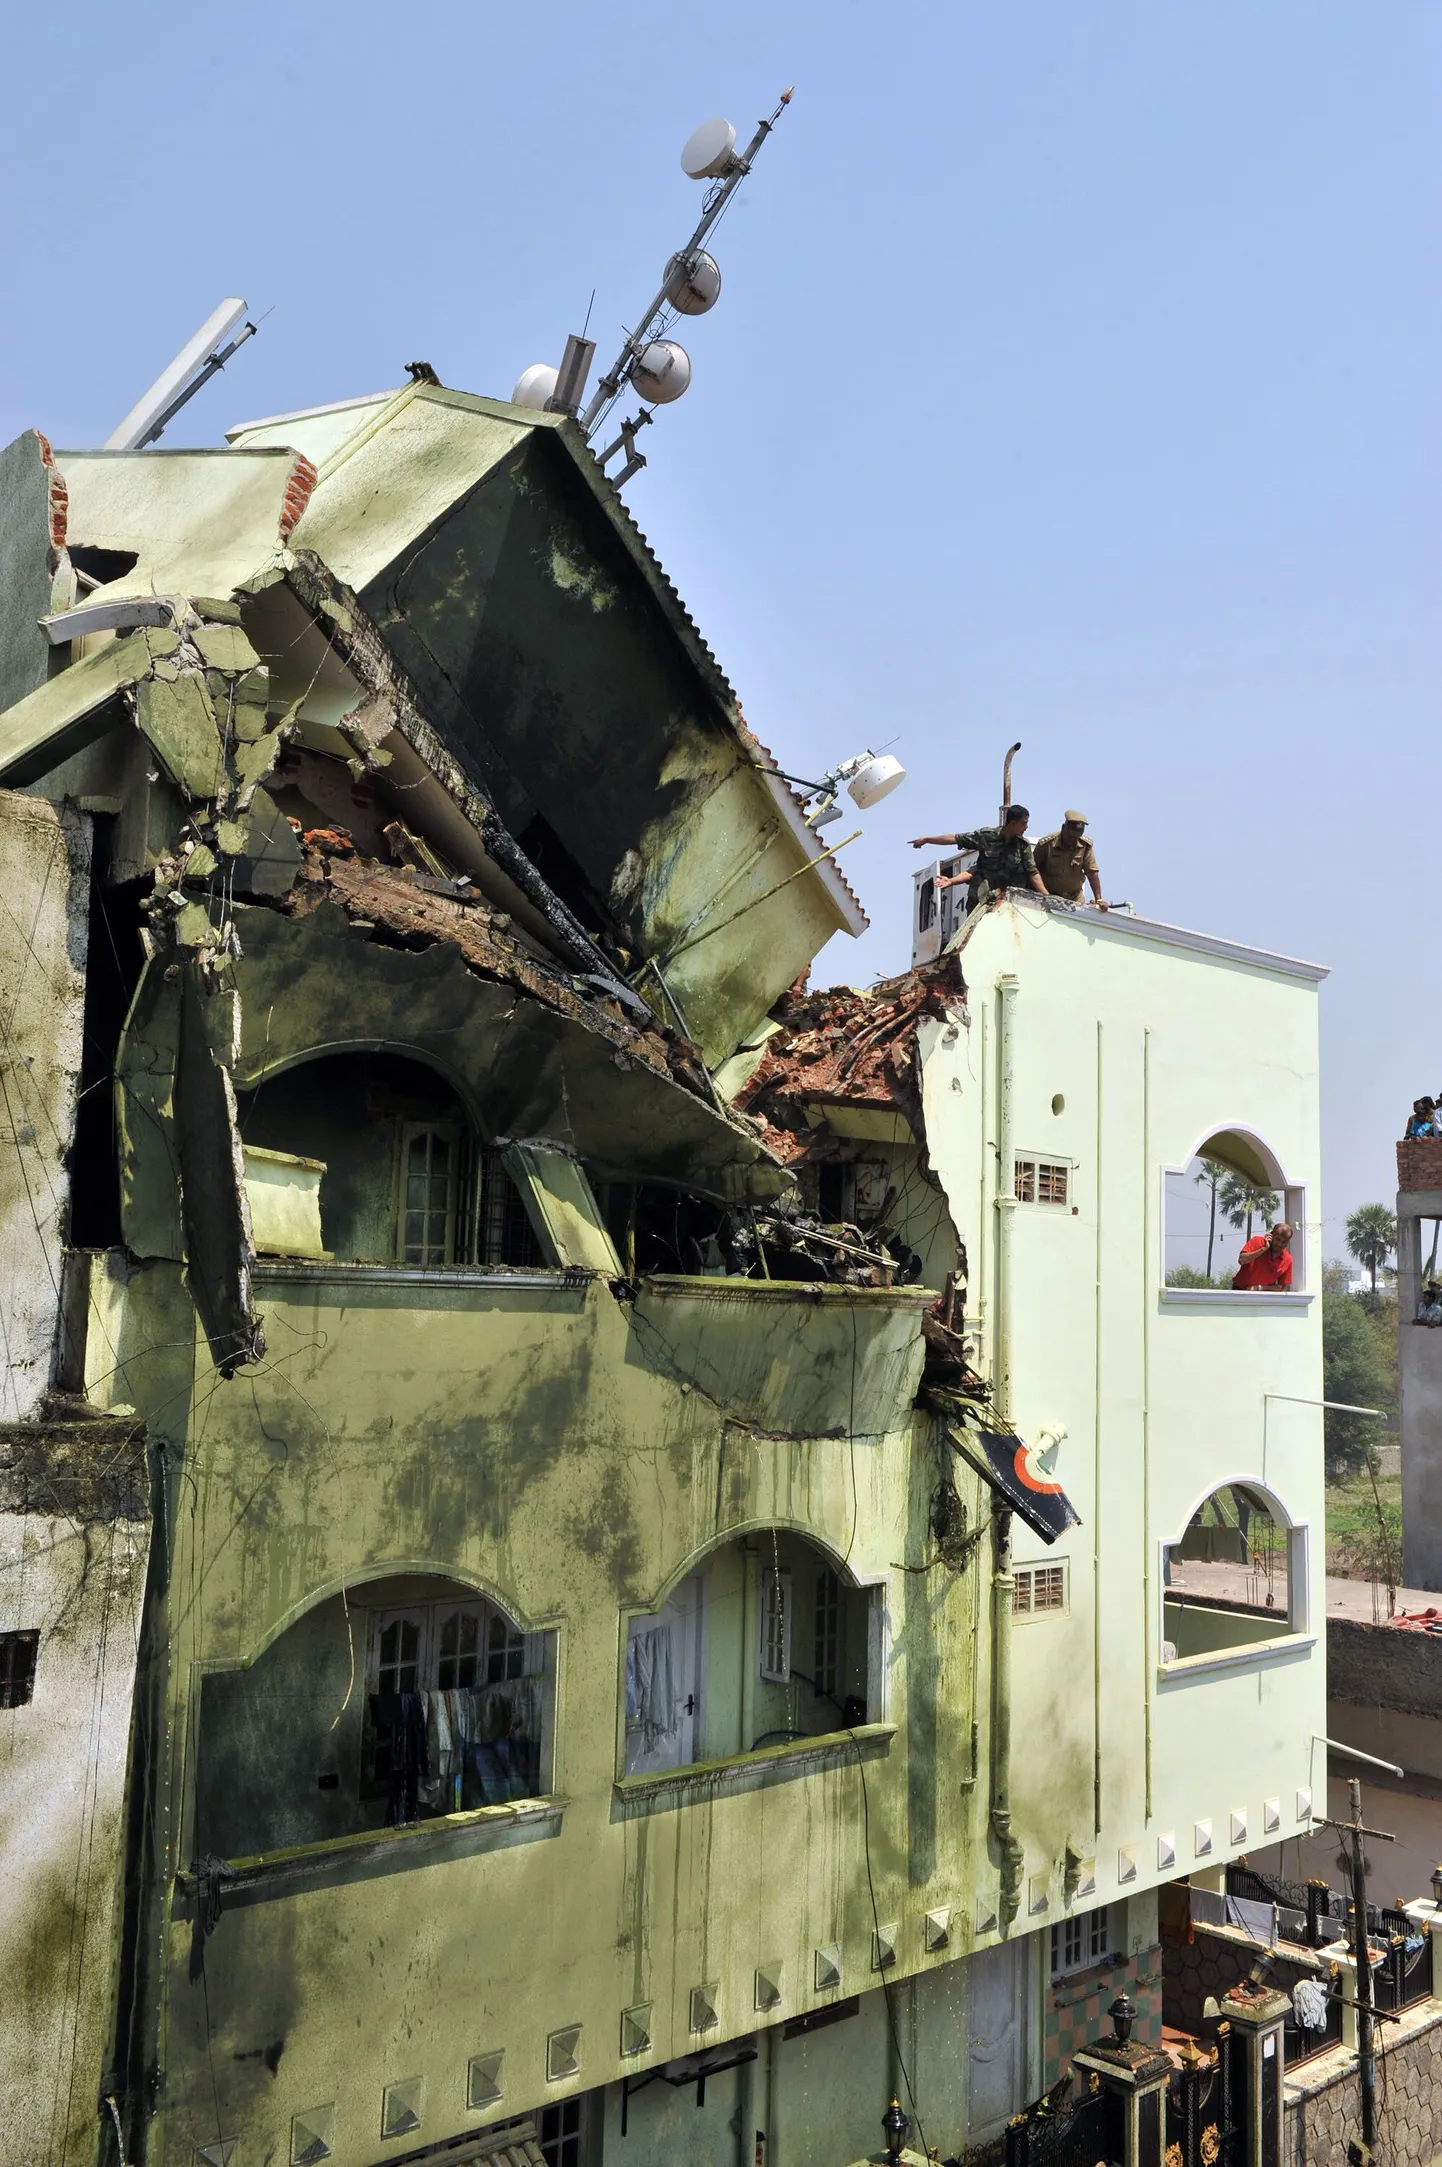 Vigurlennurühma Surya Kiran kuulunud lennuk kukkus demonstratsioonesinemisel 3-korruselisesse majja Begumpeti lennujaama lähistel Hyderabadis.